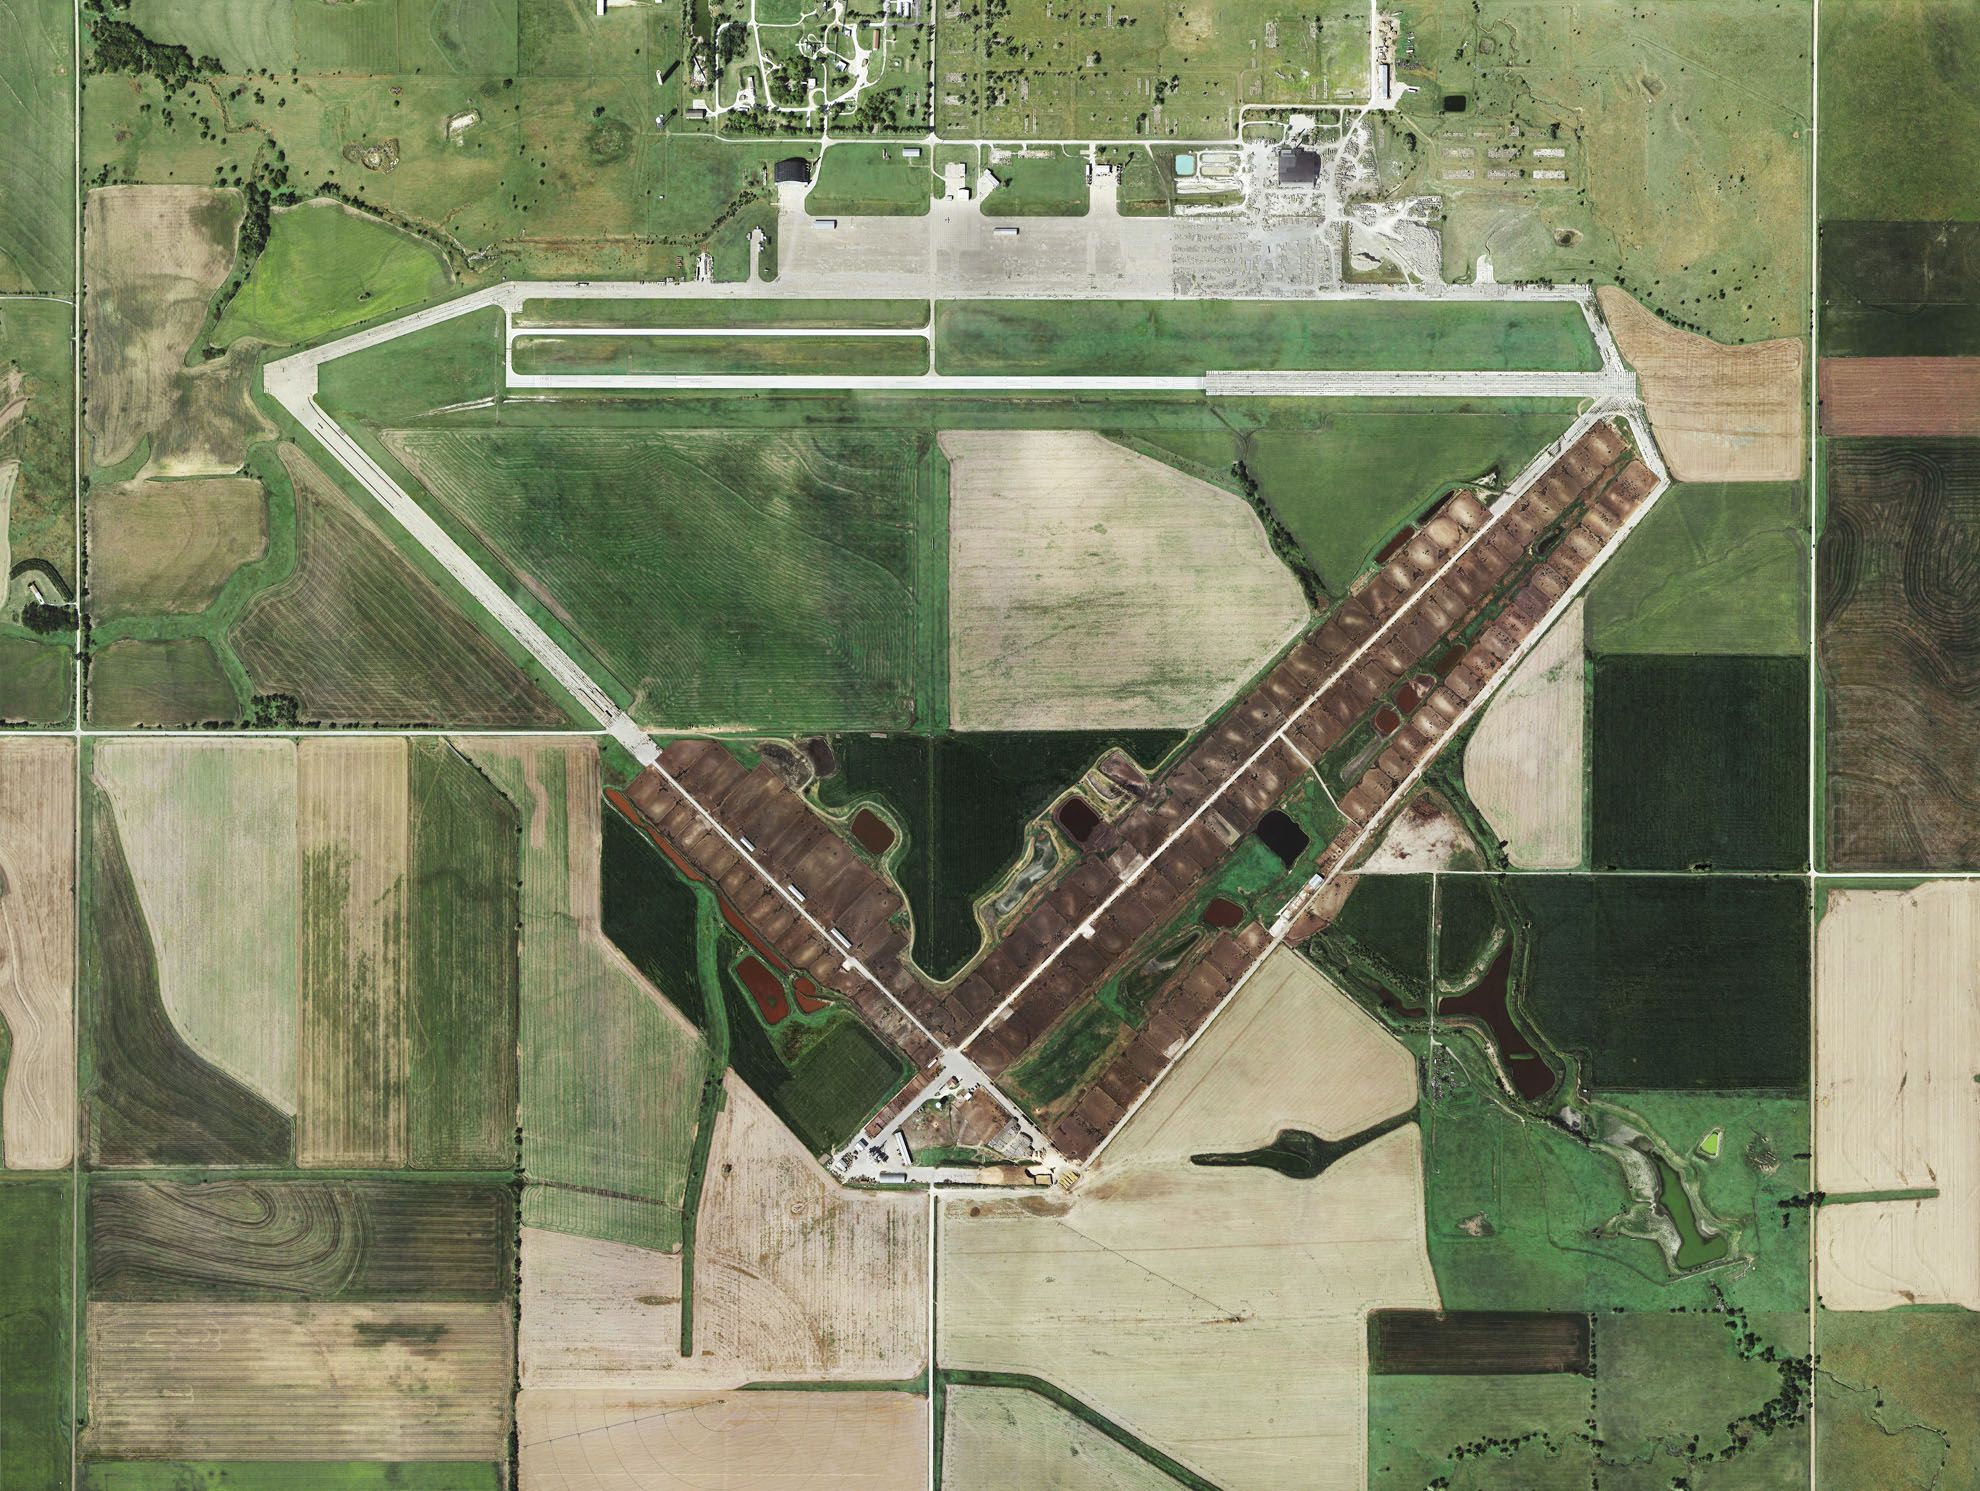 Veduta aerea della base aeronautica di Herington, fotografia di Mishka Henner.